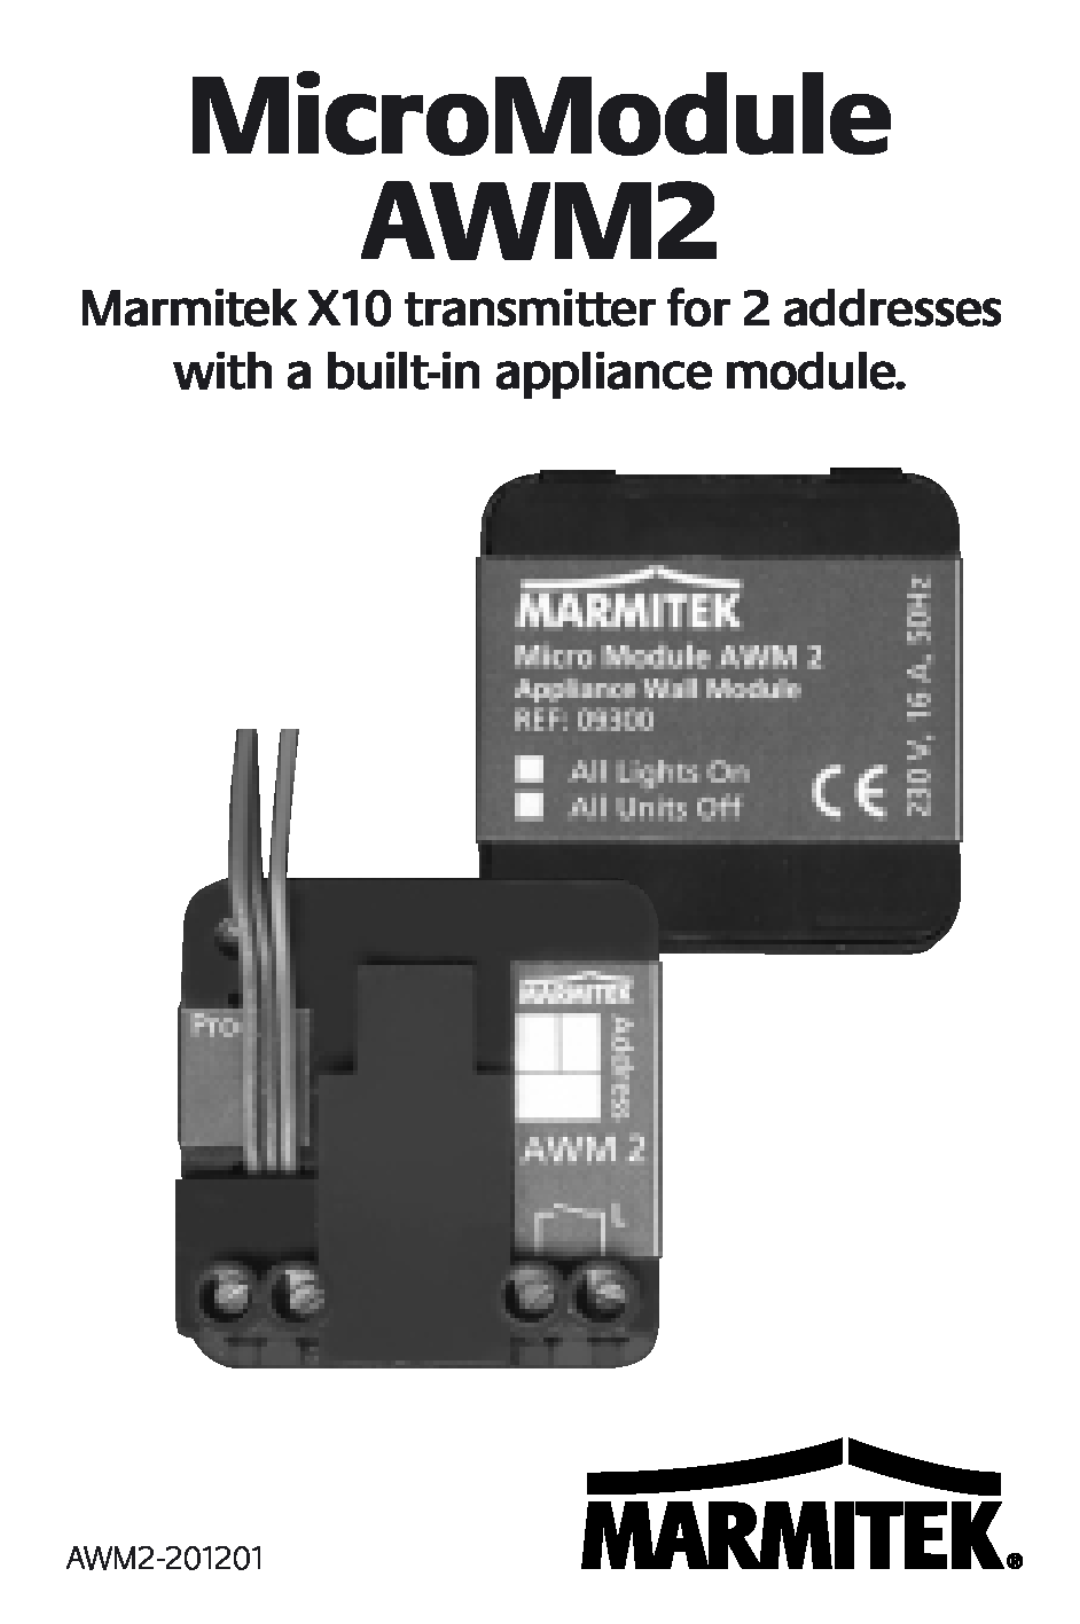 Marmitek manual AWM2-201201, MicroModule AWM2, with a built-inappliance module 